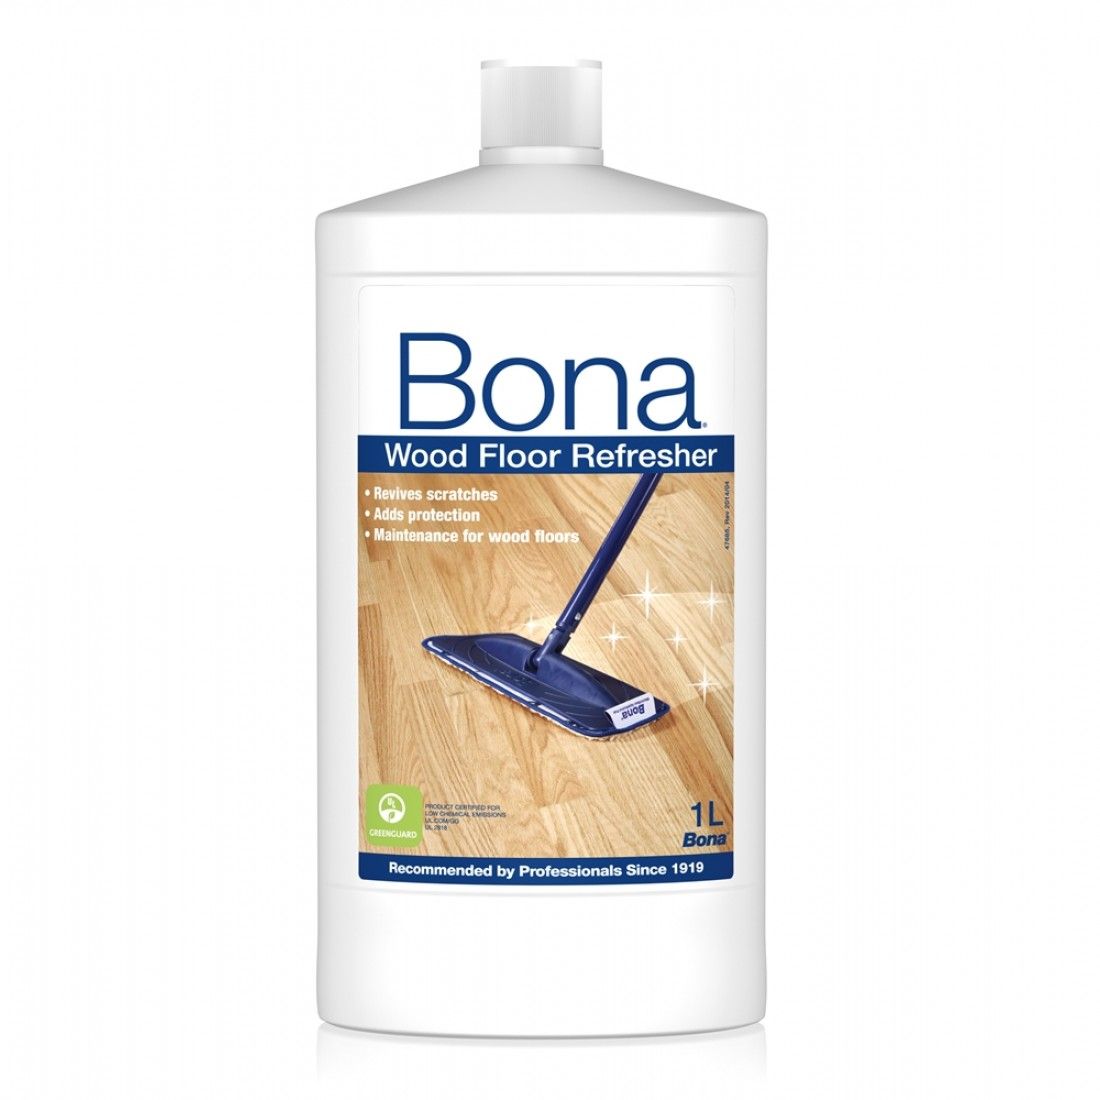 Bona Wood Floor Refresher 1 liter